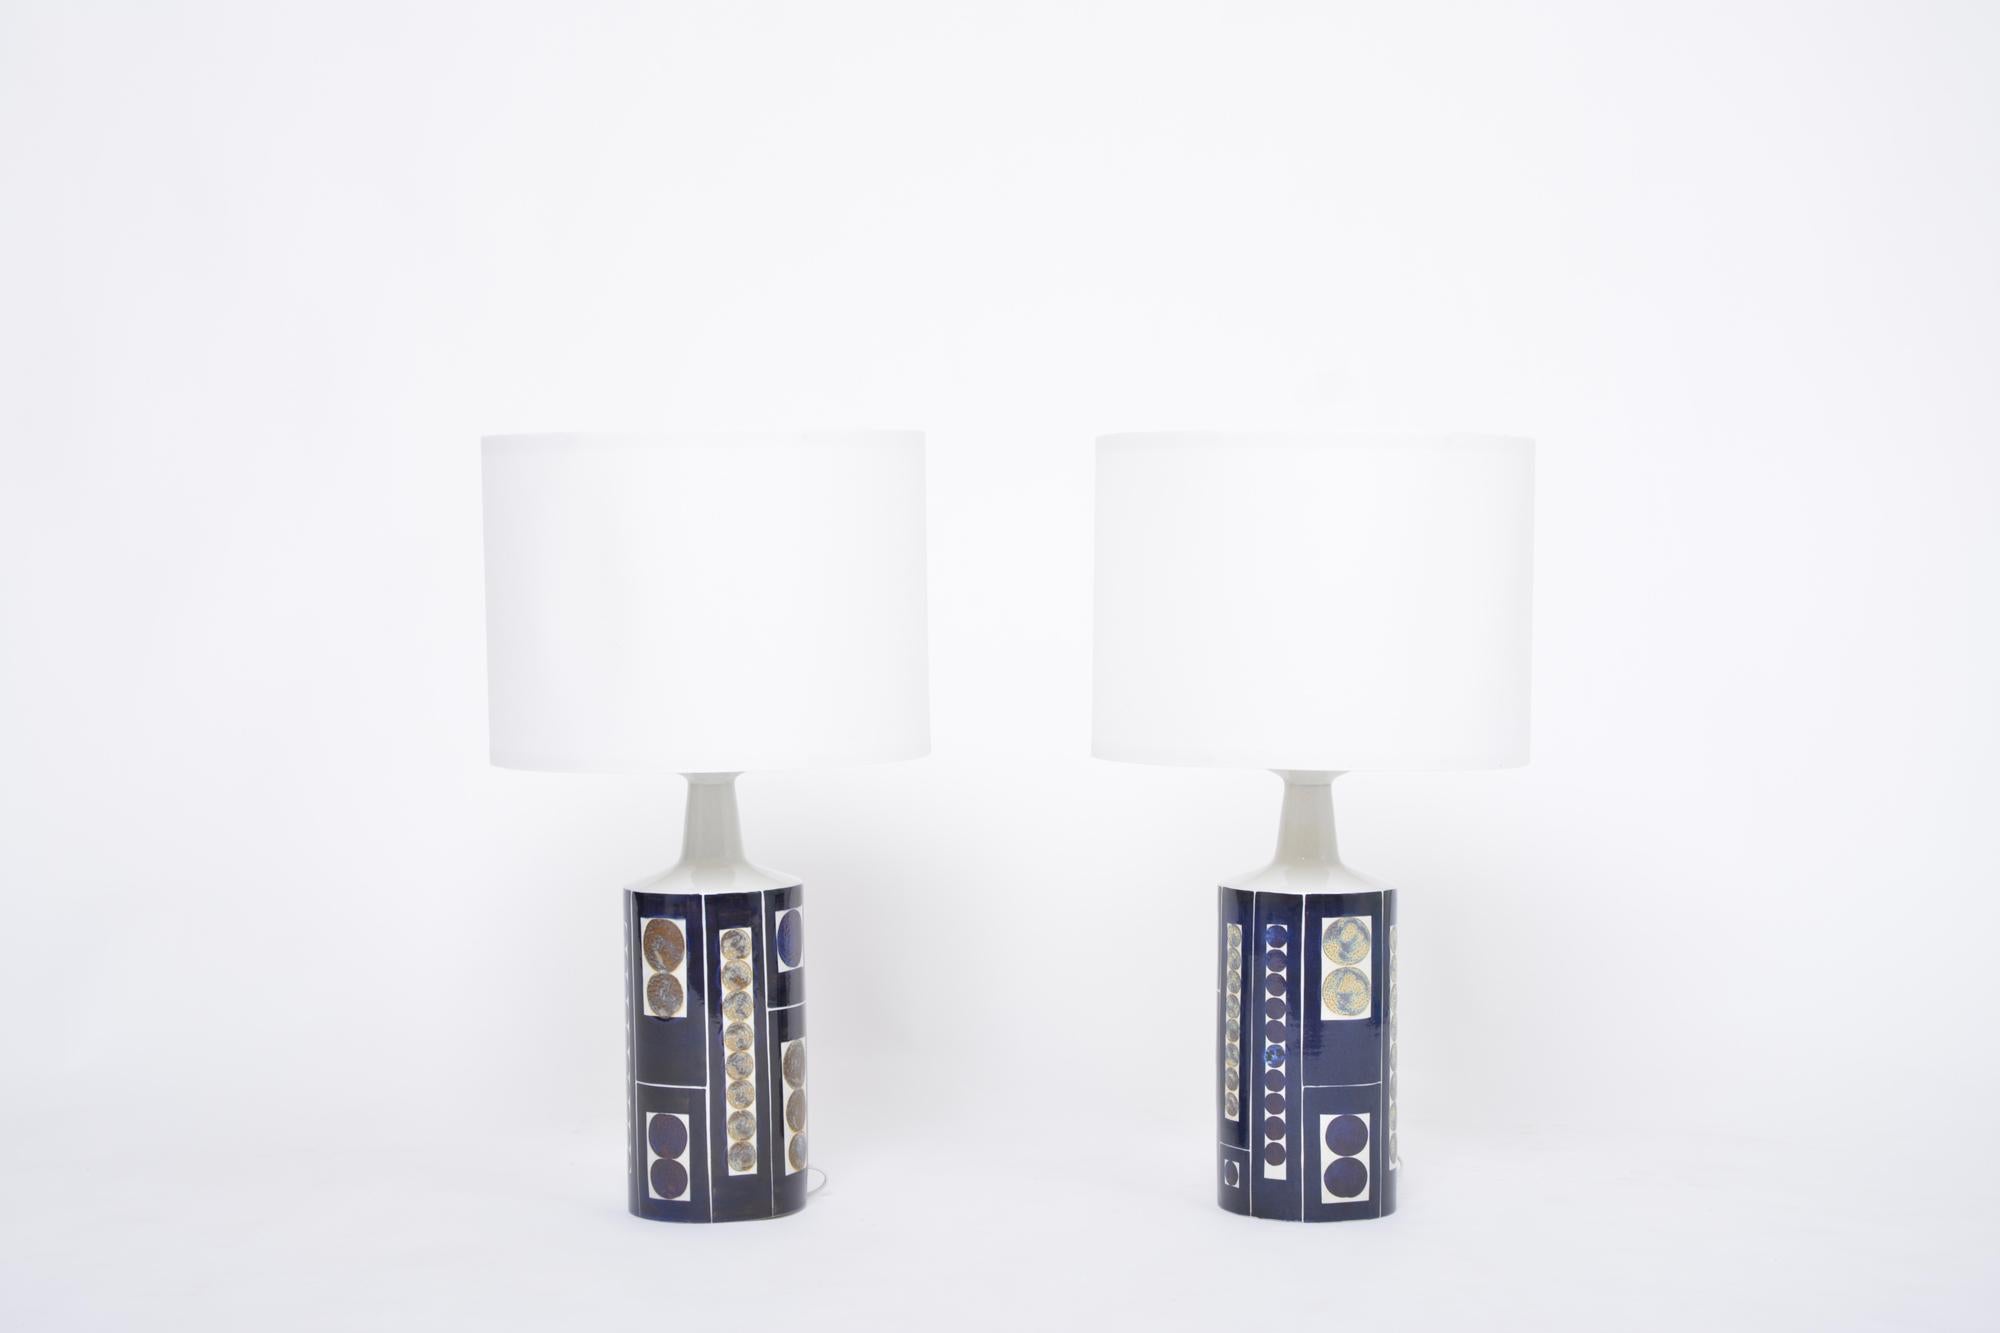 Paar Royal 7 Tischlampen aus der Mitte des Jahrhunderts von Ingelise Koefoed für Fog & Mørup
Hohe und beeindruckende Tischlampen mit sehr dekorativem, kühnem Design der dänischen Künstlerin Inge-Lise Koefoed. Die Lampe wurde in Collaboration von